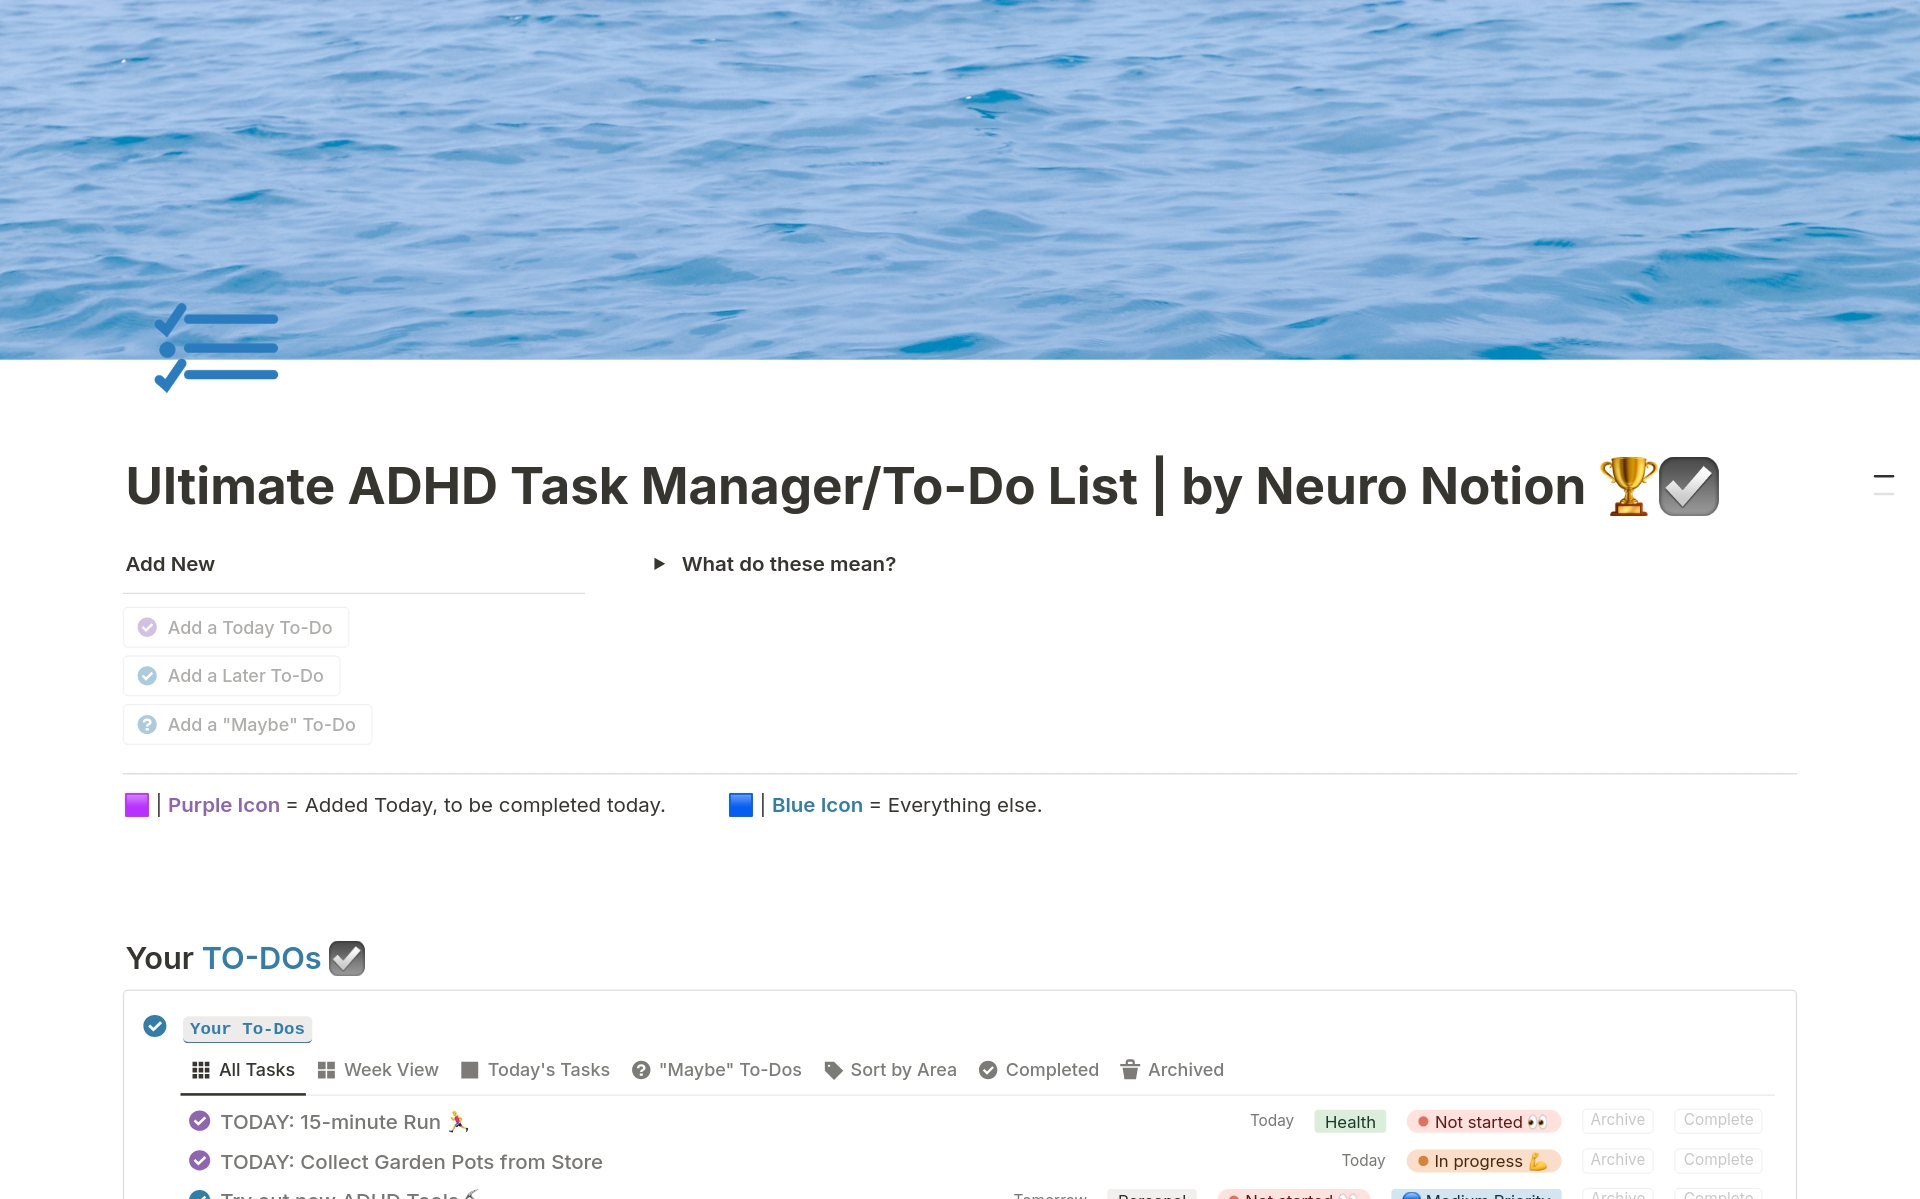 Uma prévia do modelo para Ultimate ADHD Task Manager/To-Do List 🏆☑️